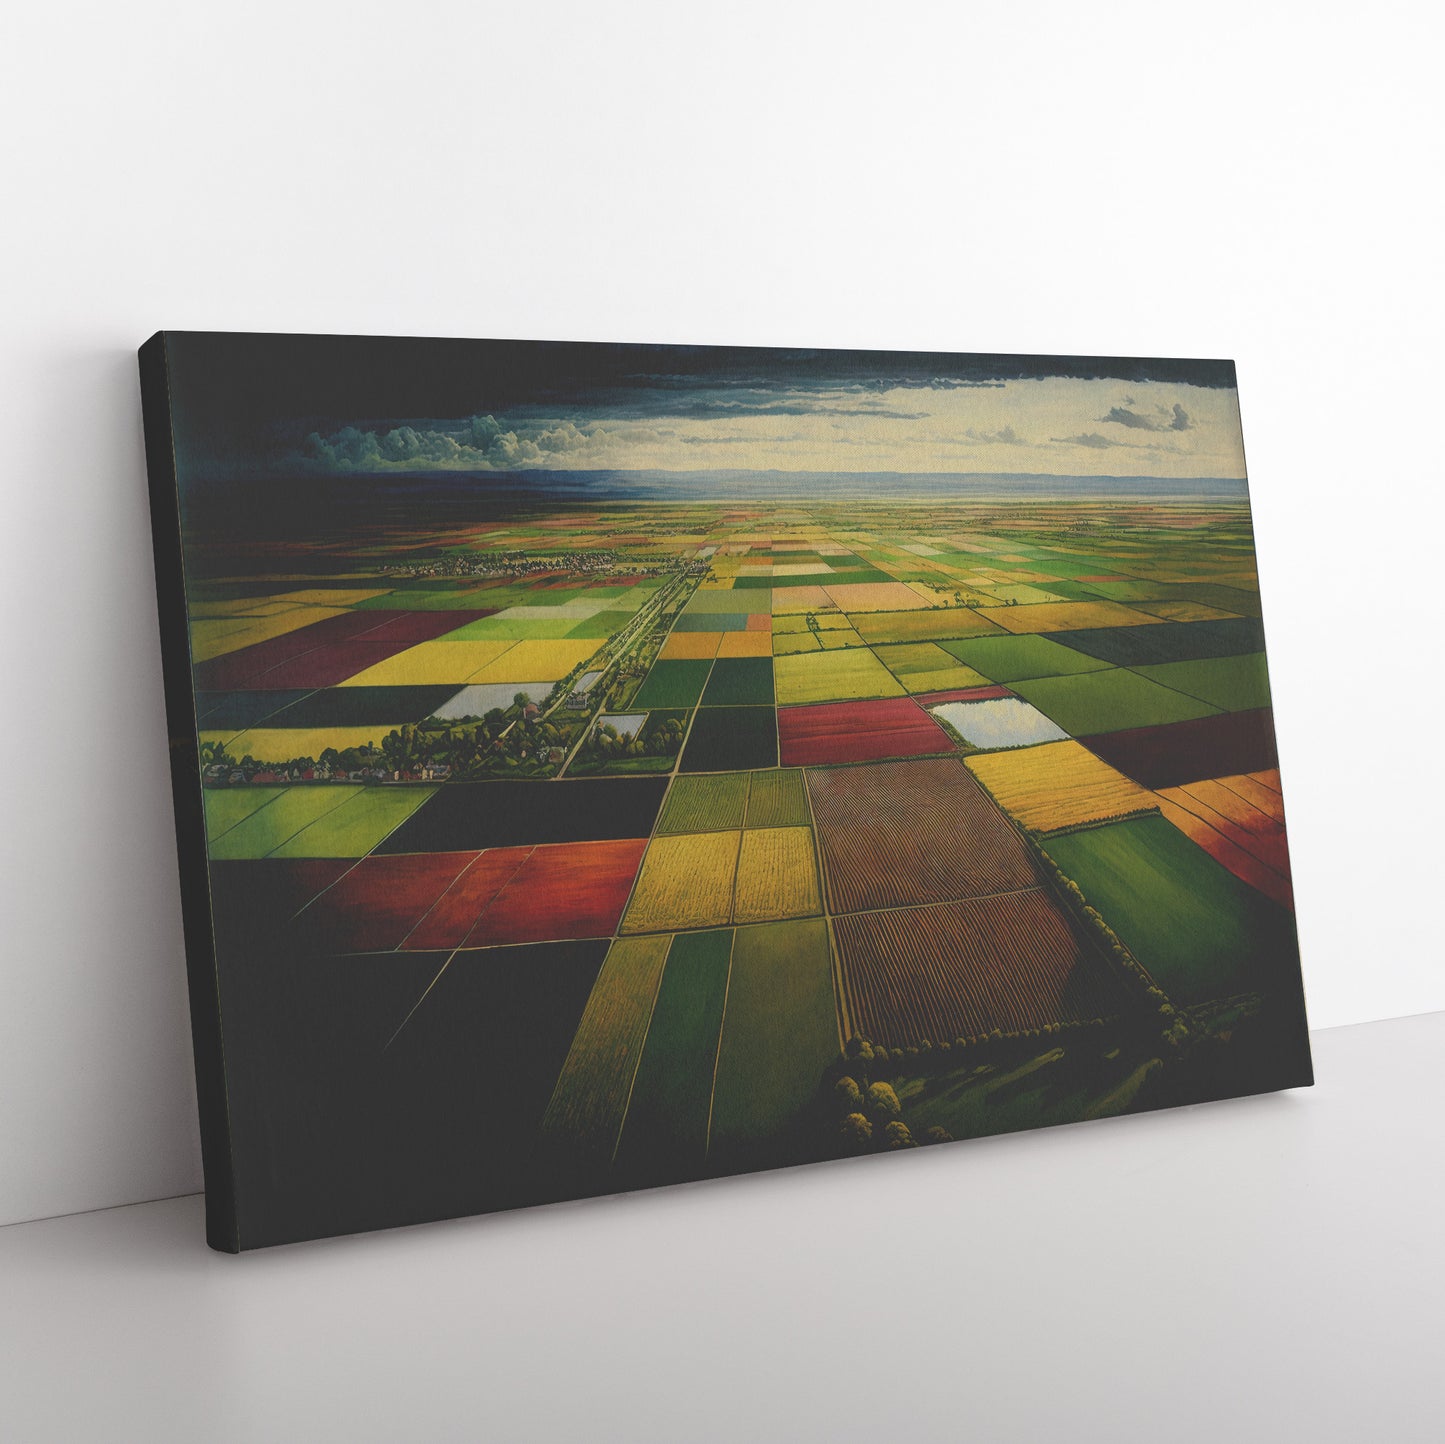 Midwest Farm Landscape Painting, Cornfields Landscape Print, Midjourney AI Art